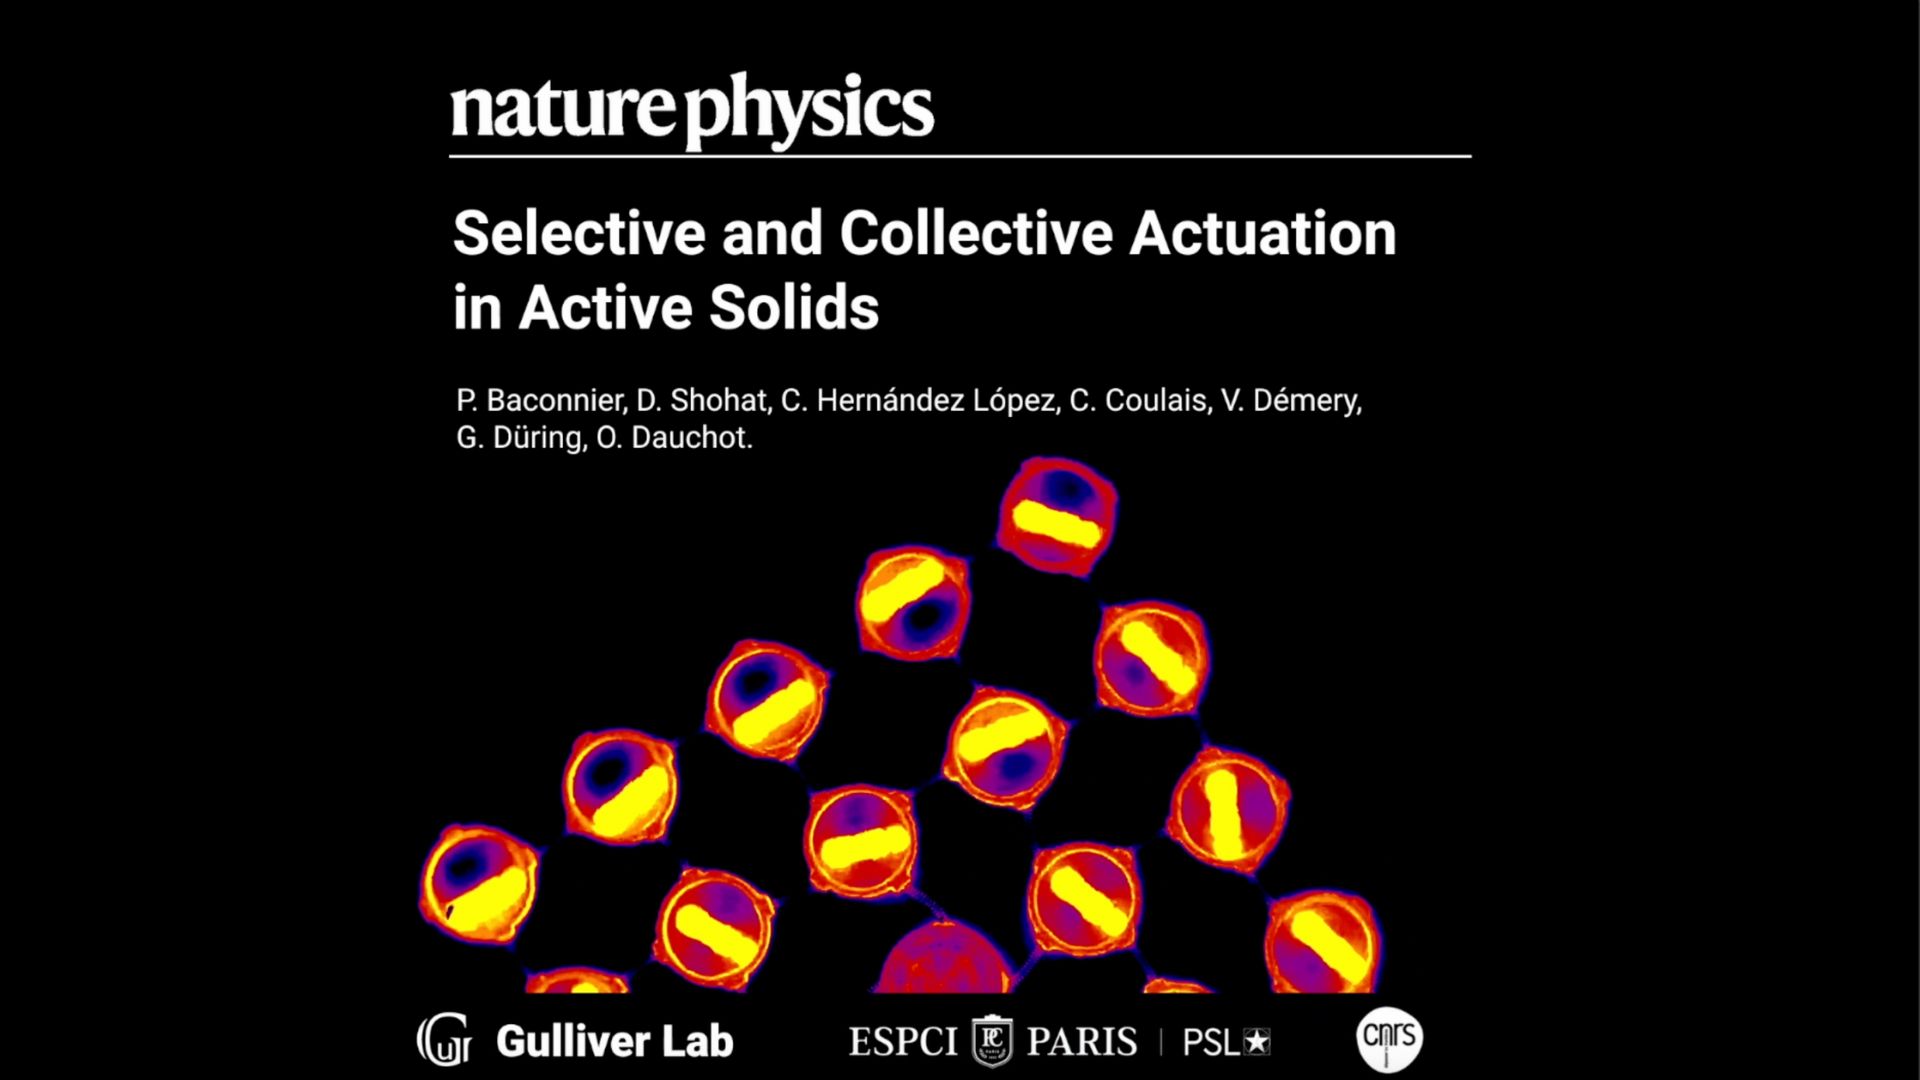  Publicación en revista Nature Physics devela el comportamiento colectivo de las partículas en sólidos activos